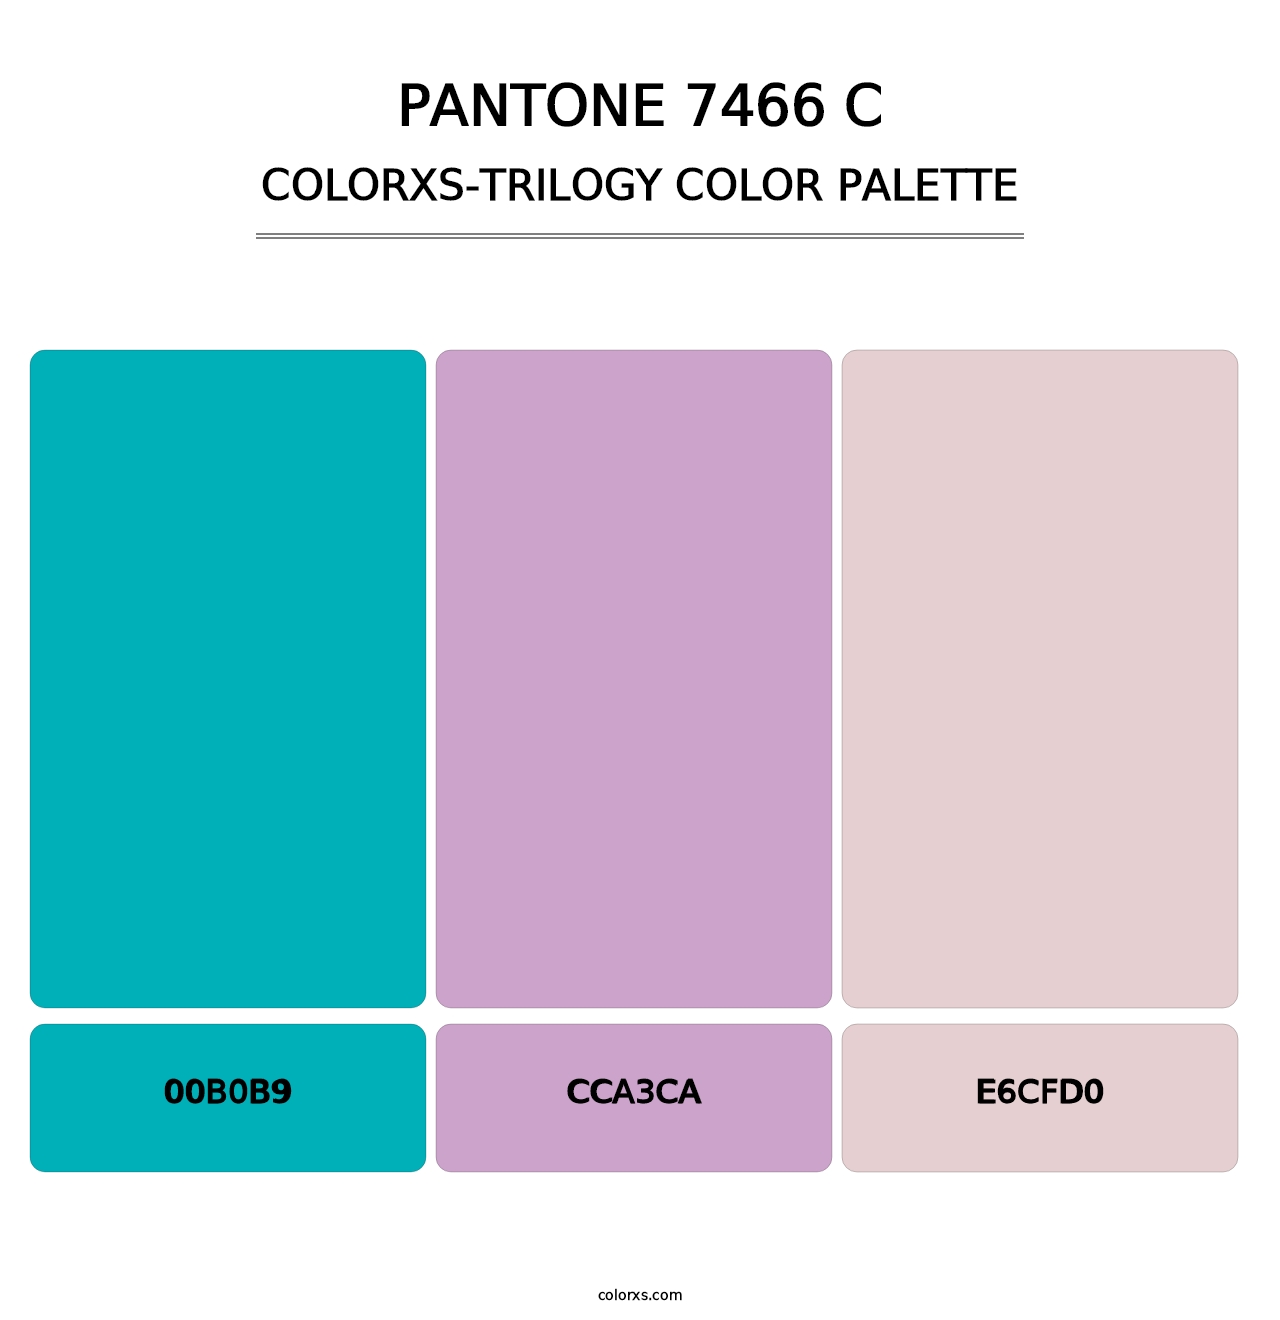 PANTONE 7466 C - Colorxs Trilogy Palette